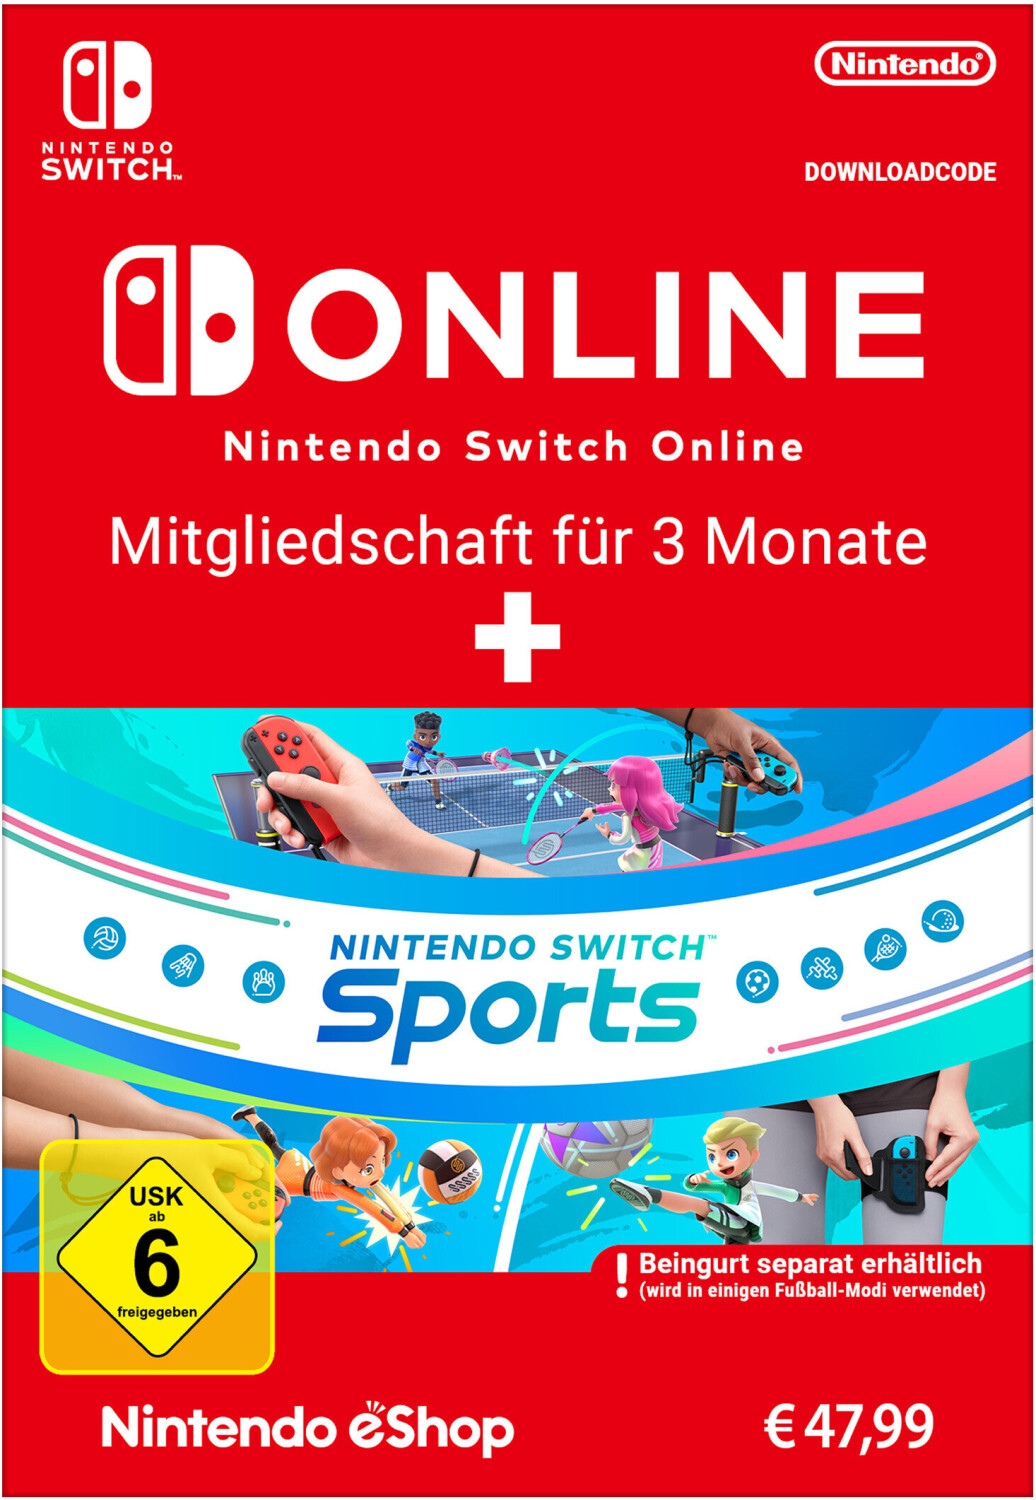 Switch | Nintendo Nintendo 69,50 + Monate € Online 3 Switch Sports Preisvergleich Mitgliedschaft bei für ab